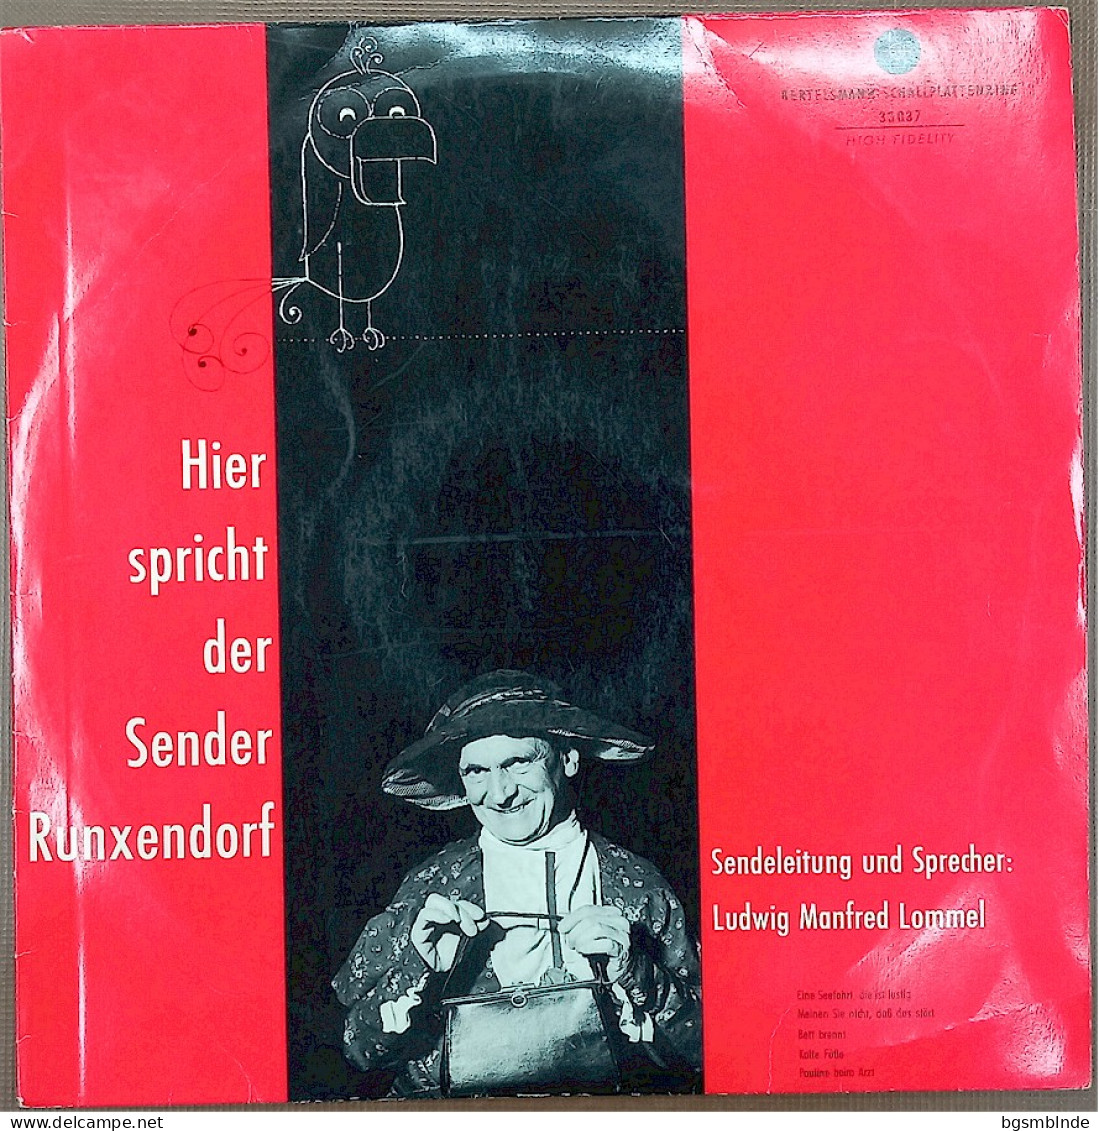 Hier Spricht Der Sender Runxendorf / Ludwig Manfred Lommel - Other - German Music